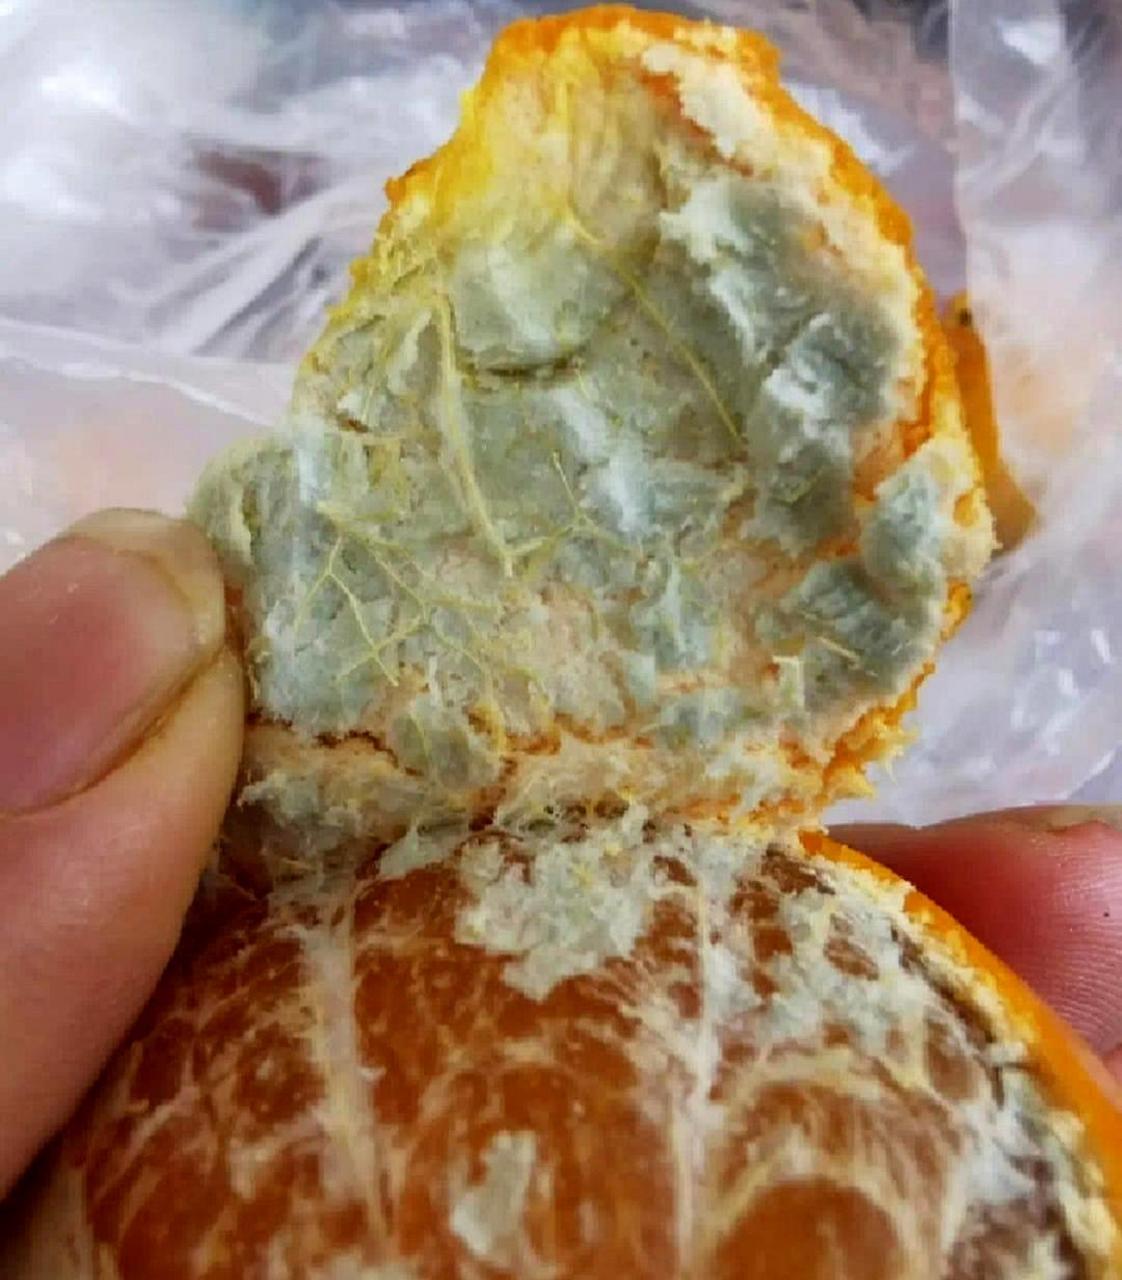 这个橘子是否已经长出霉菌?